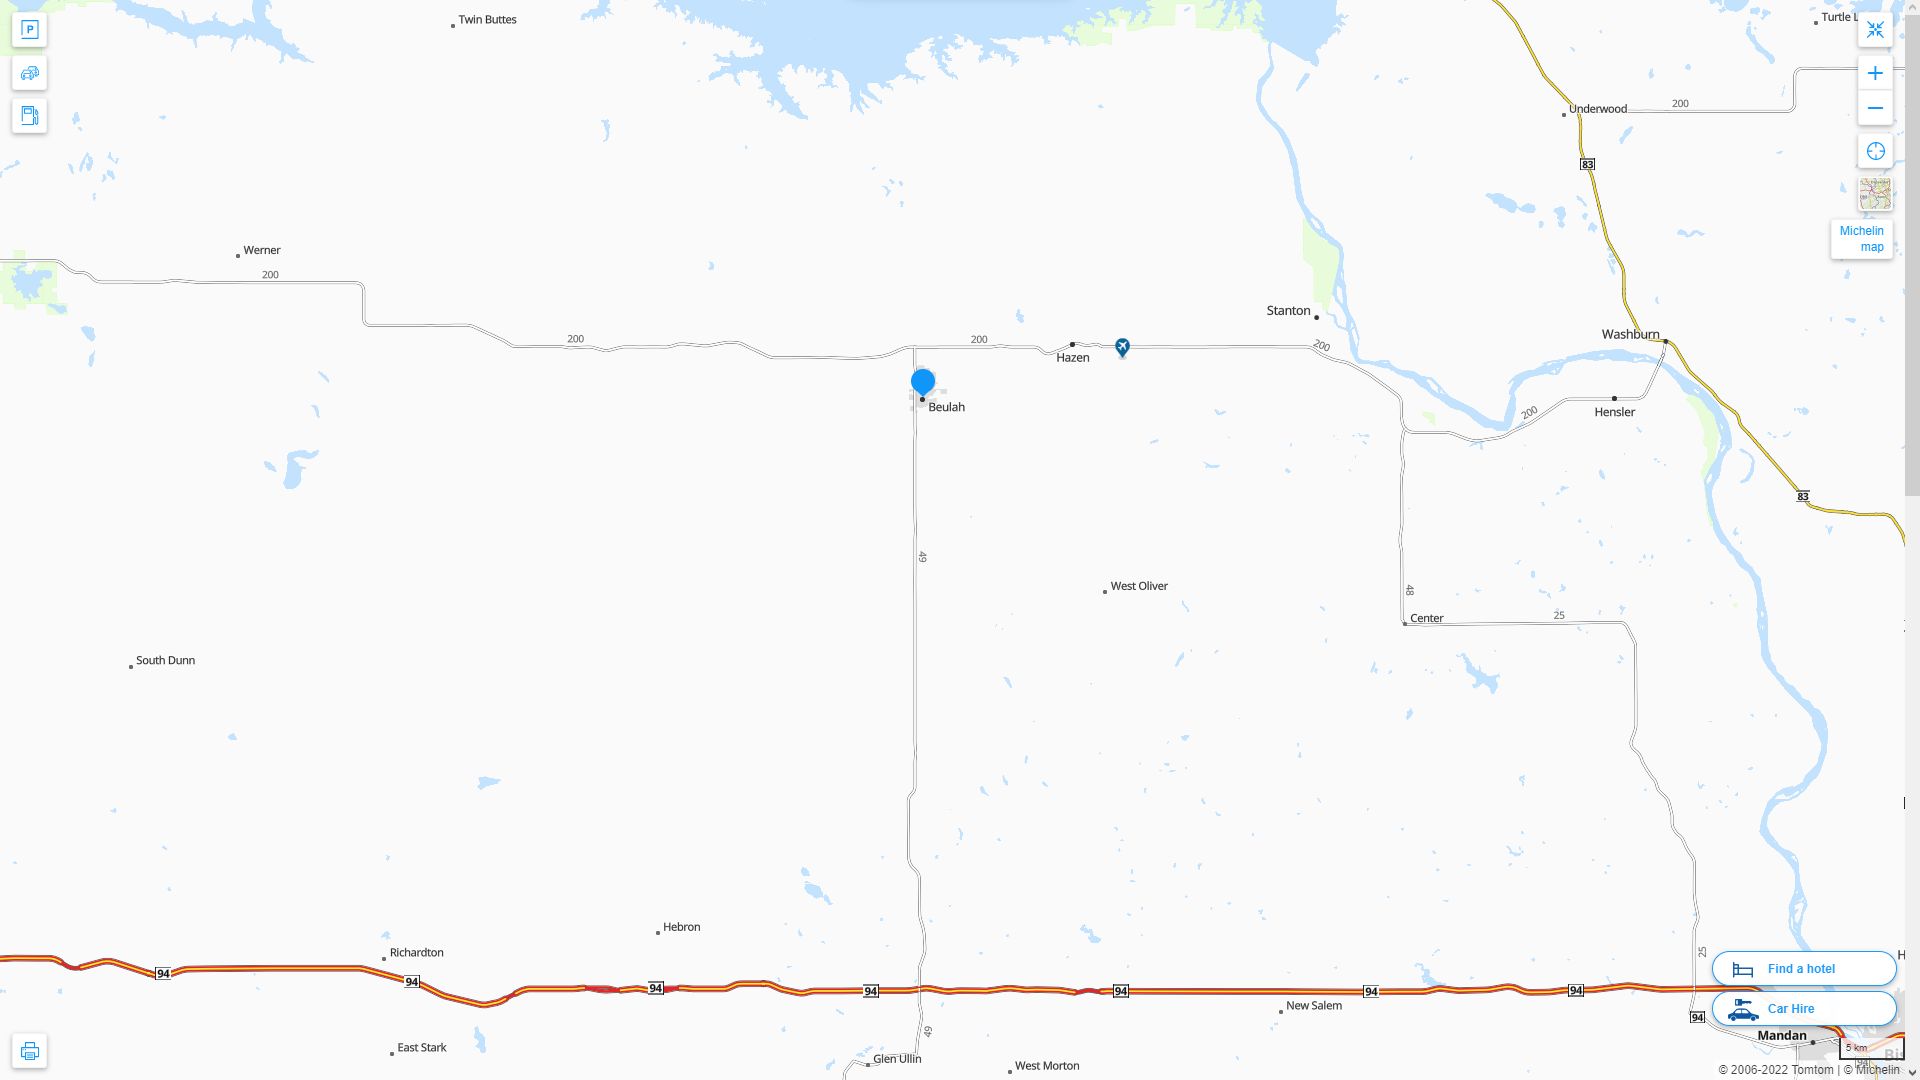 Beulah North Dakota Highway and Road Map